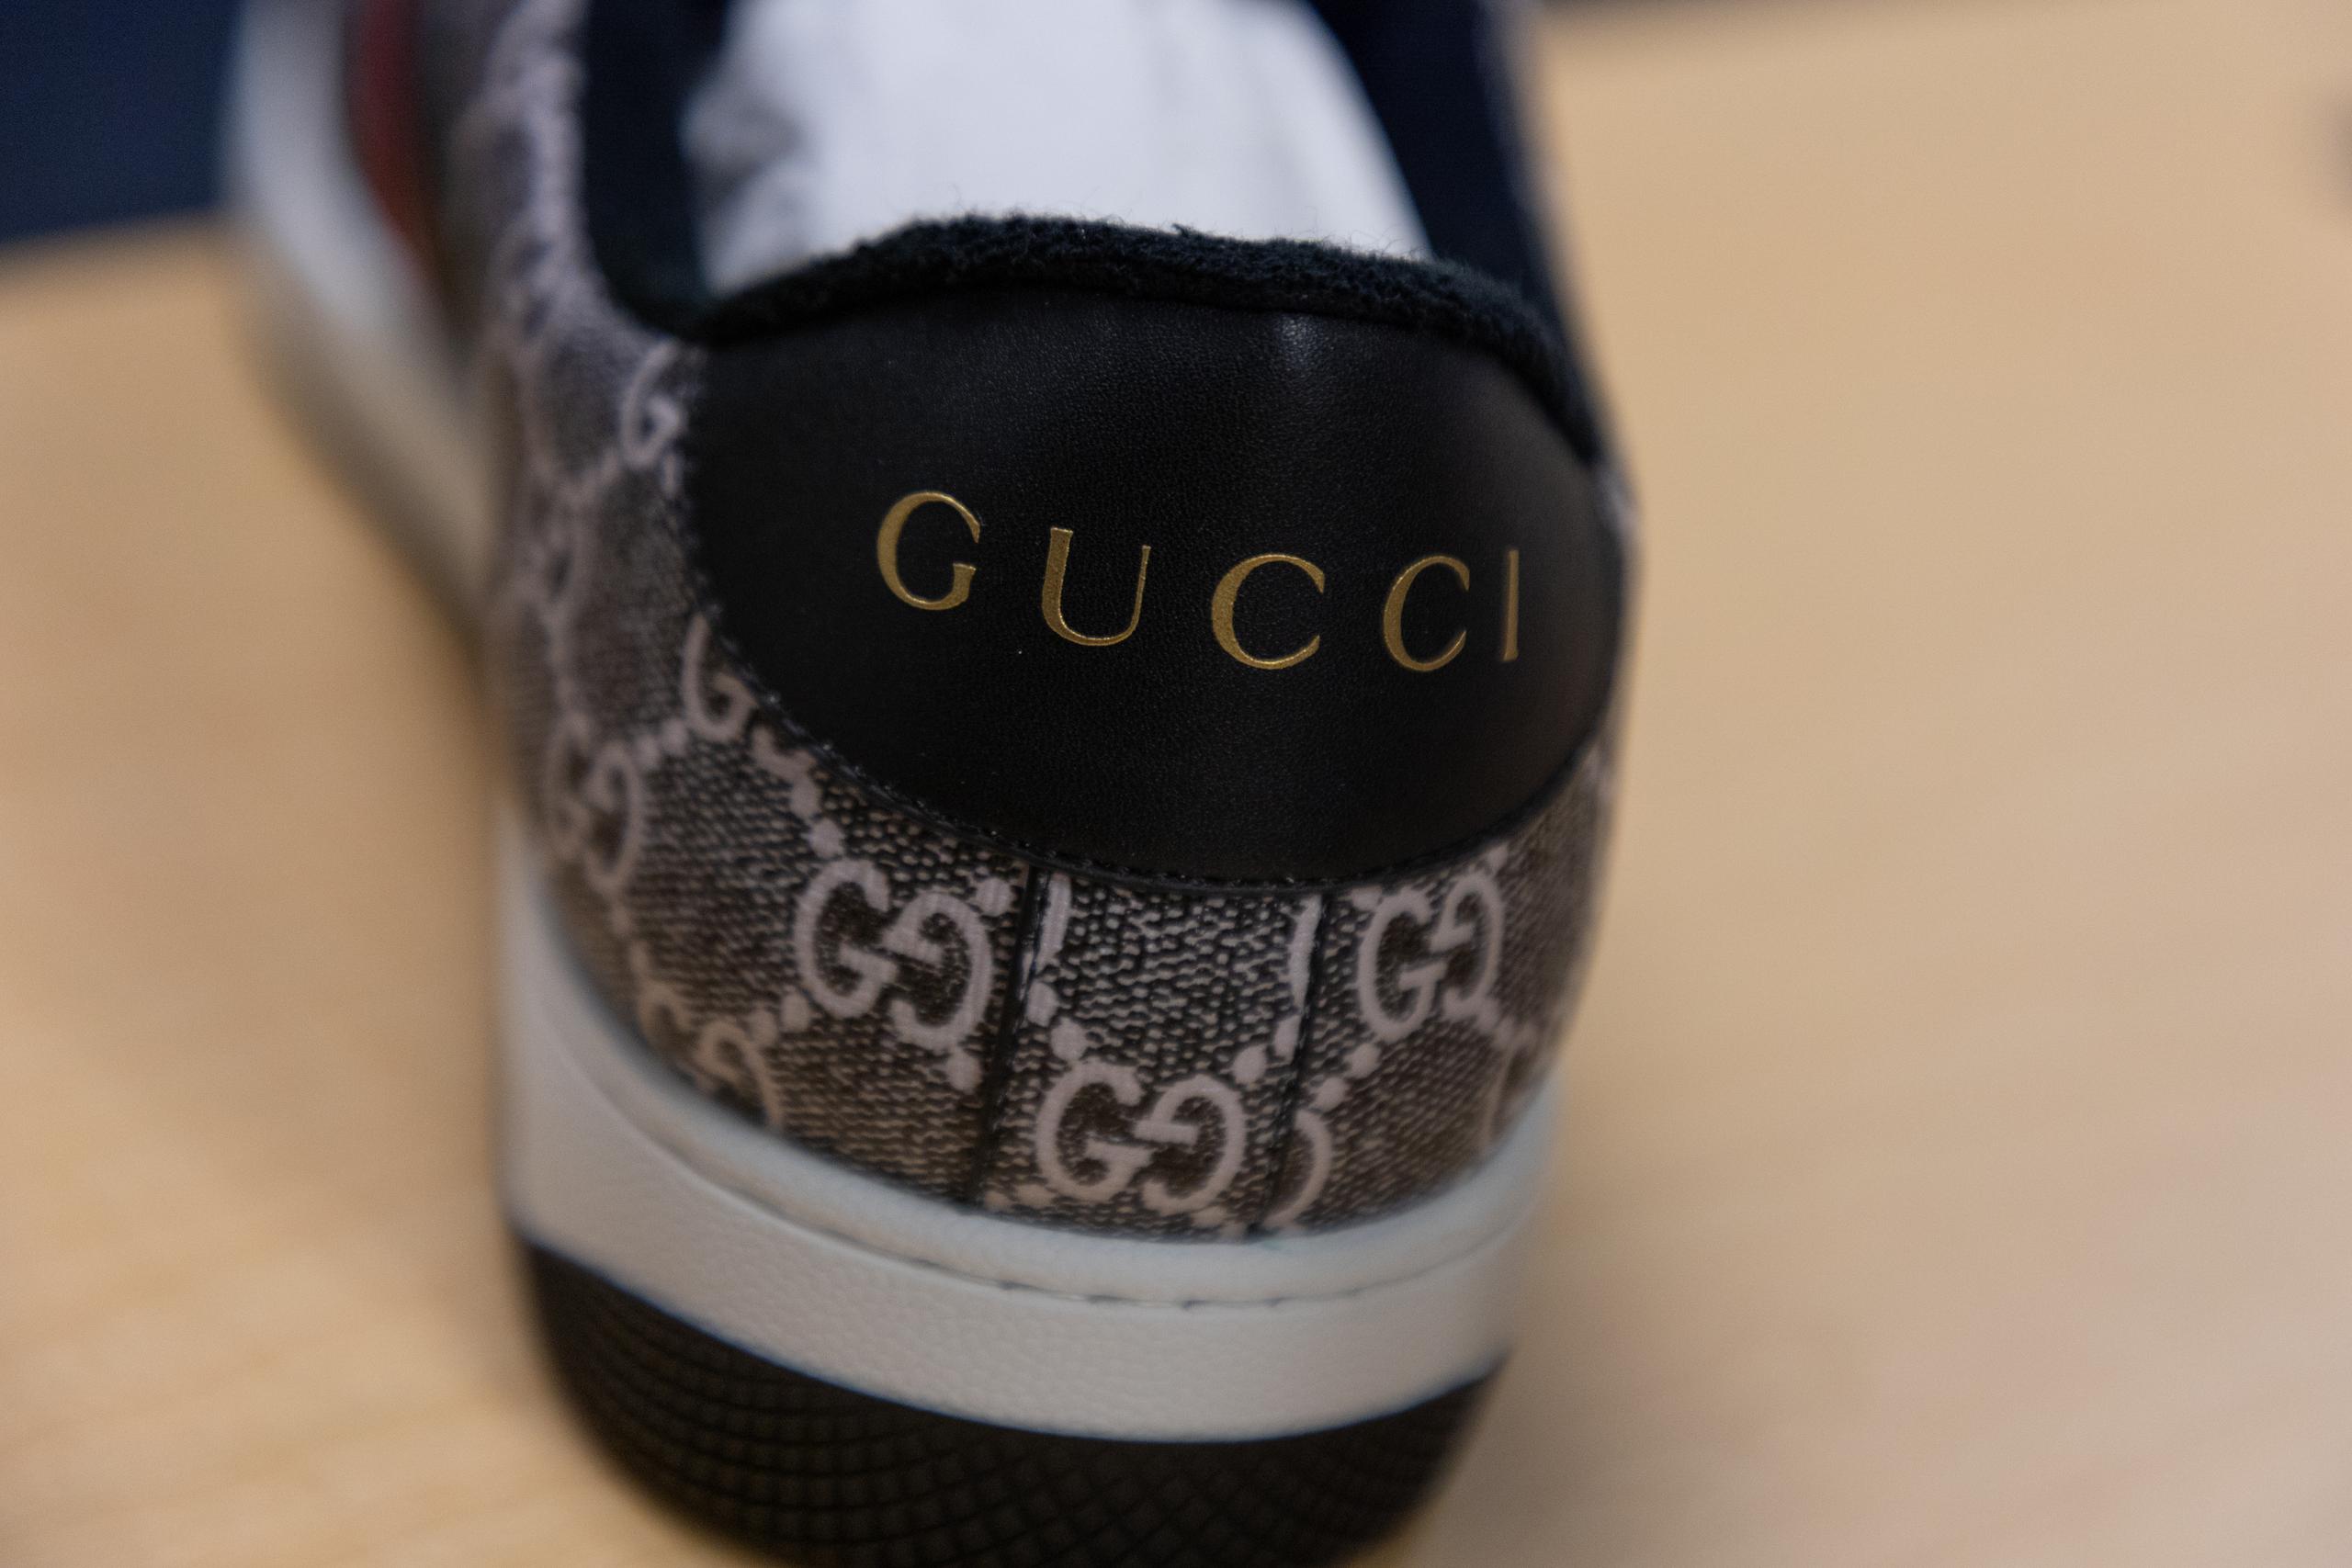 Es evidente que este zapato es falso, pues los espacios entre las letras de la marca GUCCI no coinciden con la marca original.